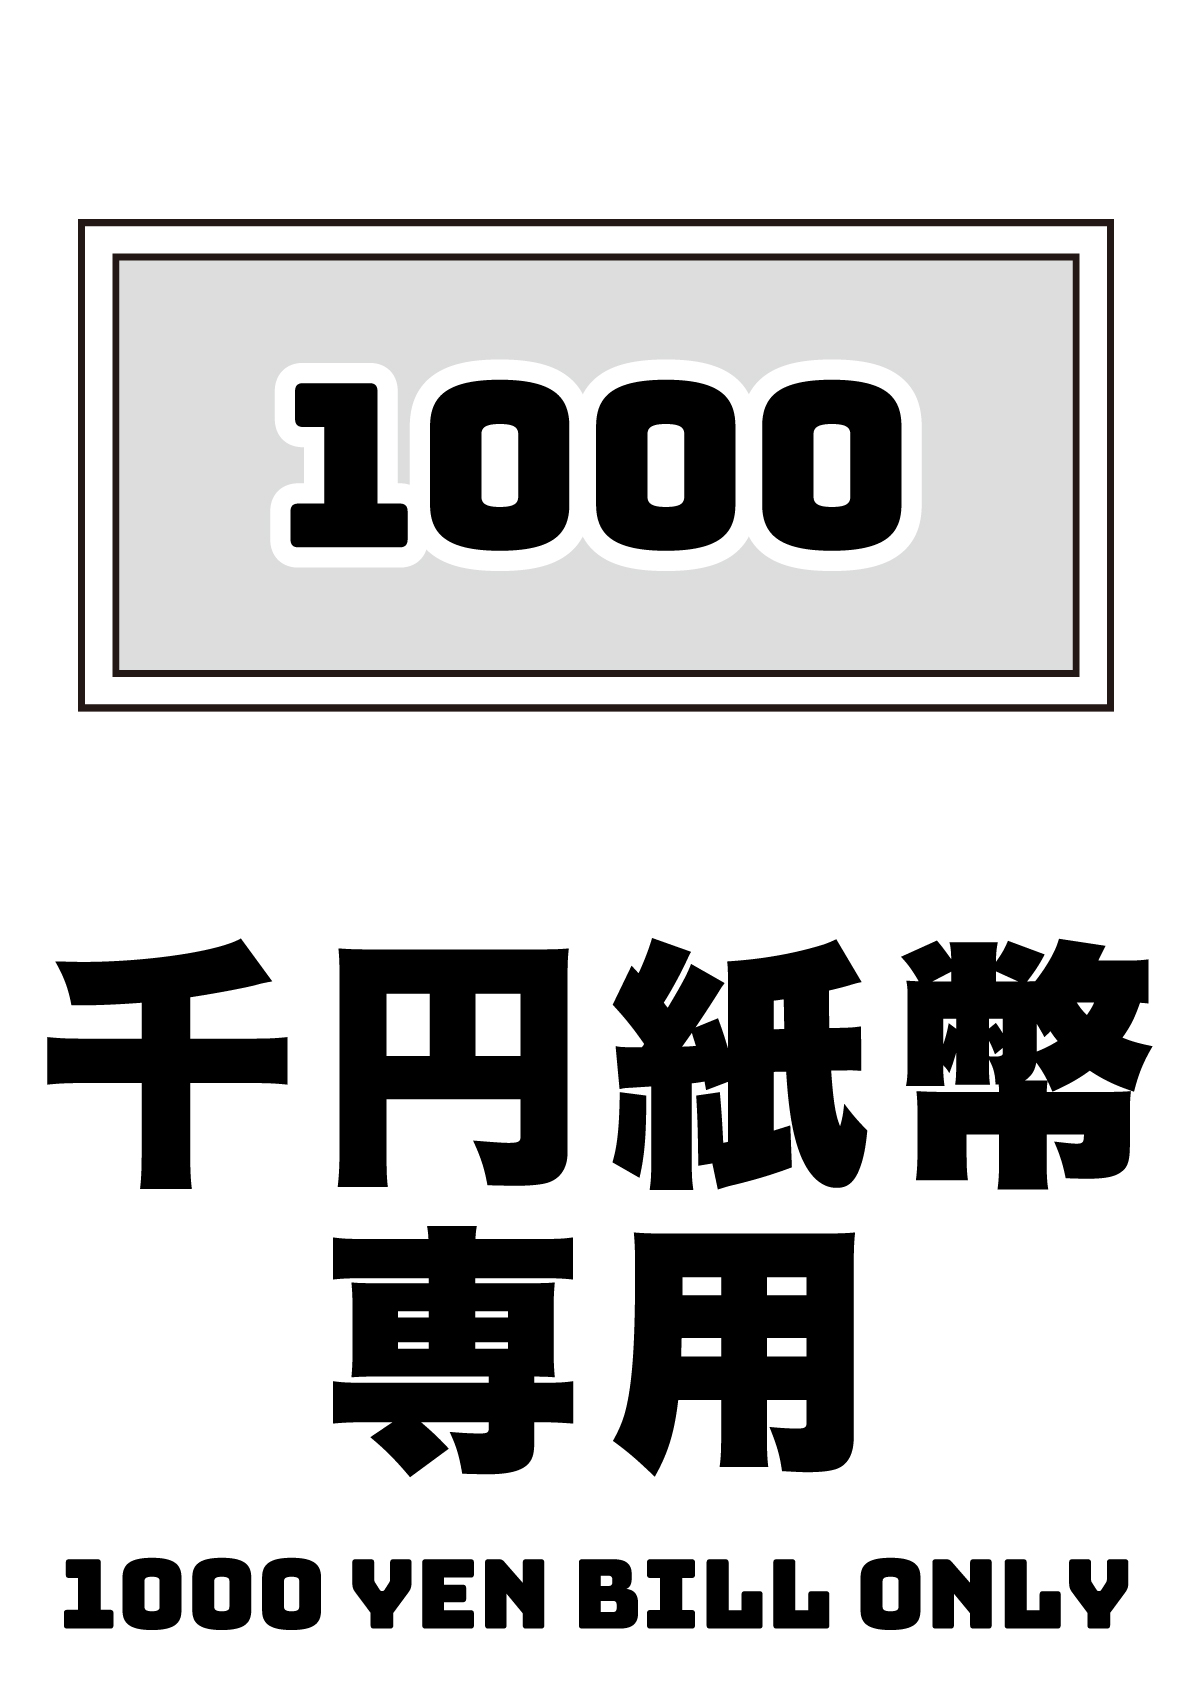 千円札専用の張り紙